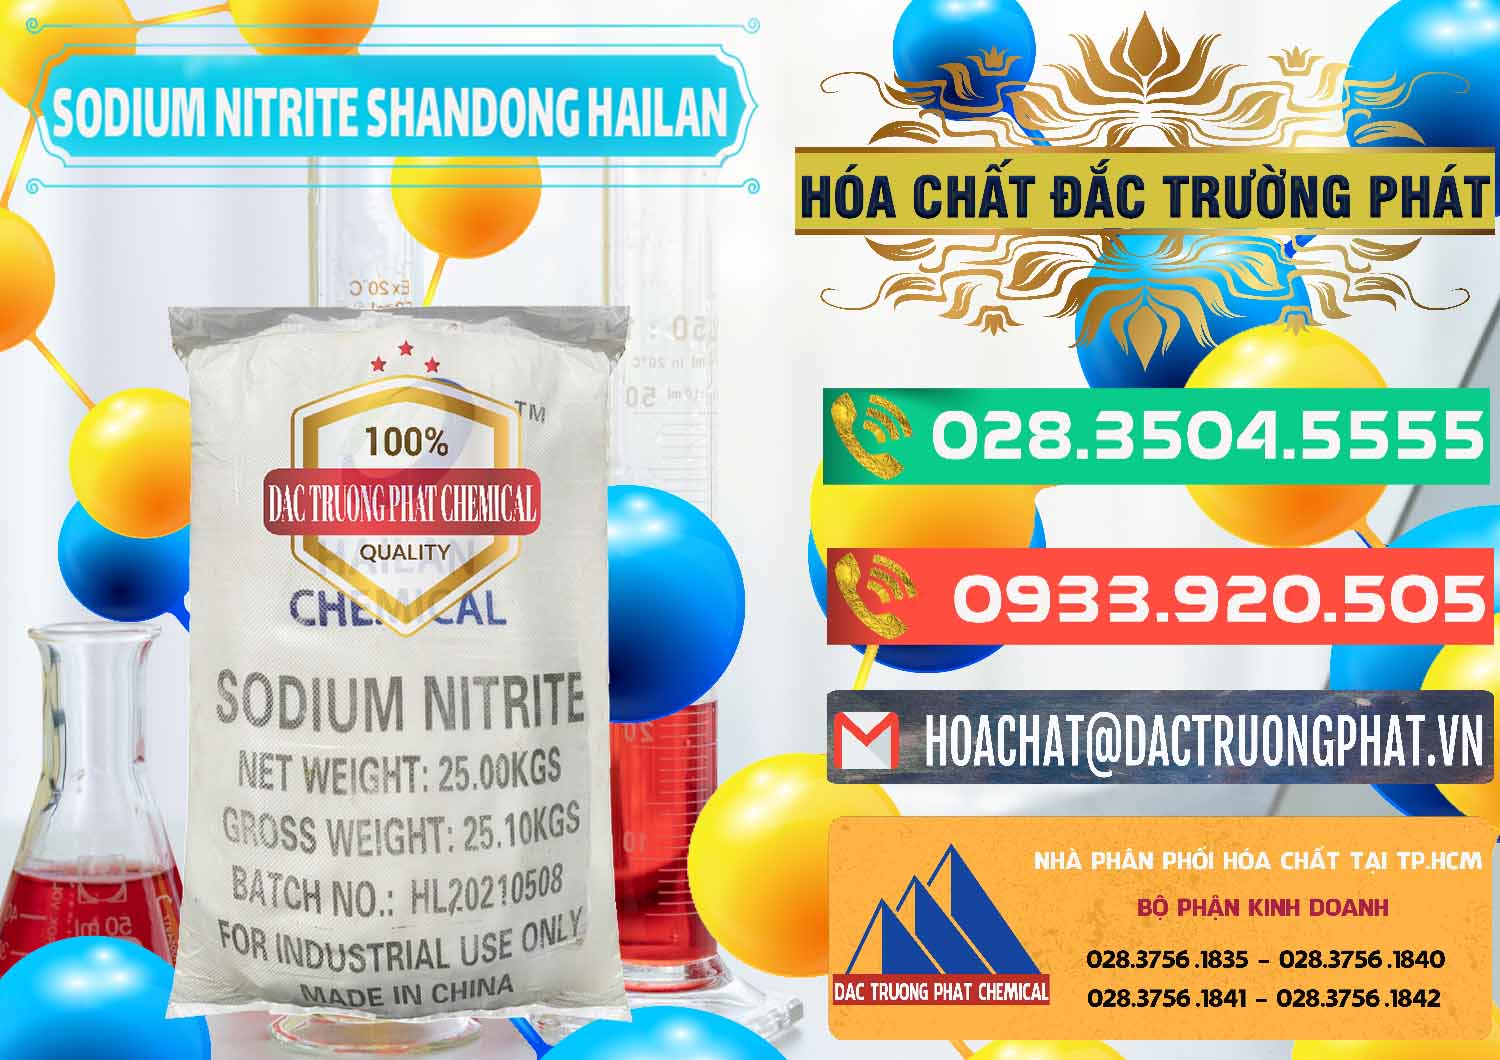 Cty chuyên kinh doanh ( bán ) Sodium Nitrite - NANO2 99.3% Shandong Hailan Trung Quốc China - 0284 - Cung cấp - phân phối hóa chất tại TP.HCM - congtyhoachat.com.vn